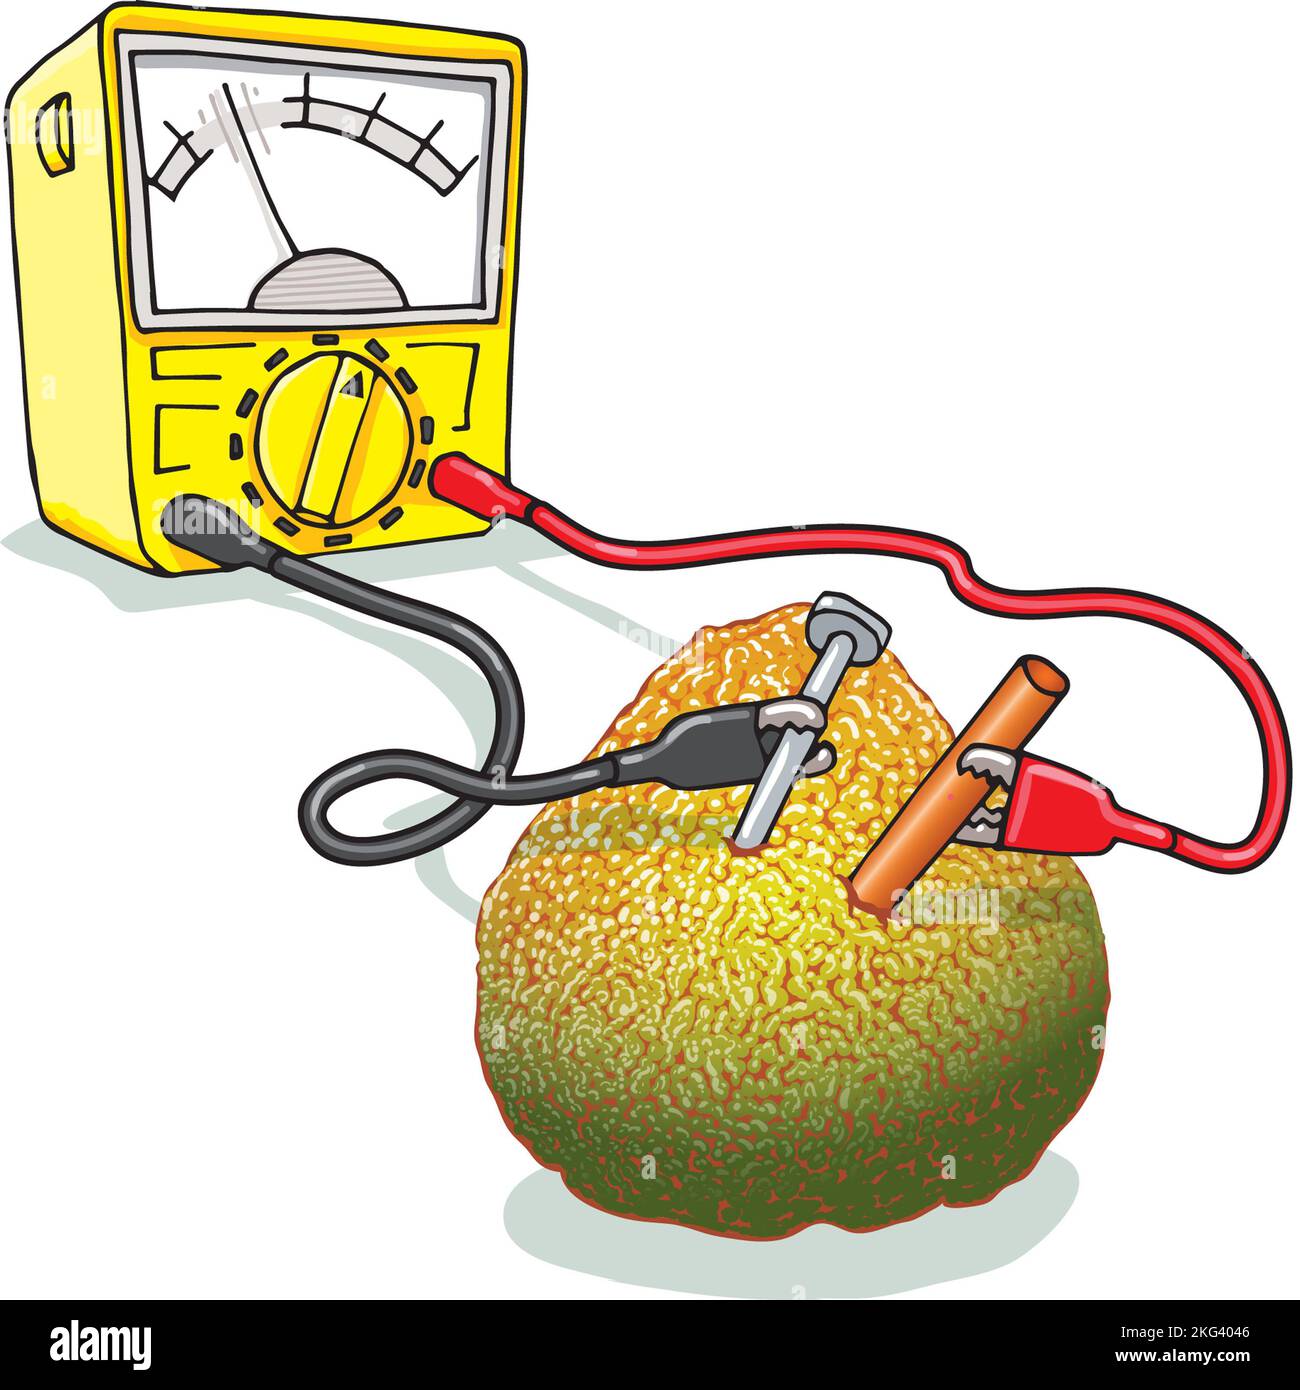 Art montrant l'expérience scientifique pour faire batterie de fruits: Électrodes dans le fruit ugli, l'échange d'électrons crée qui peut ensuite être mesuré sur ampèremètre Banque D'Images